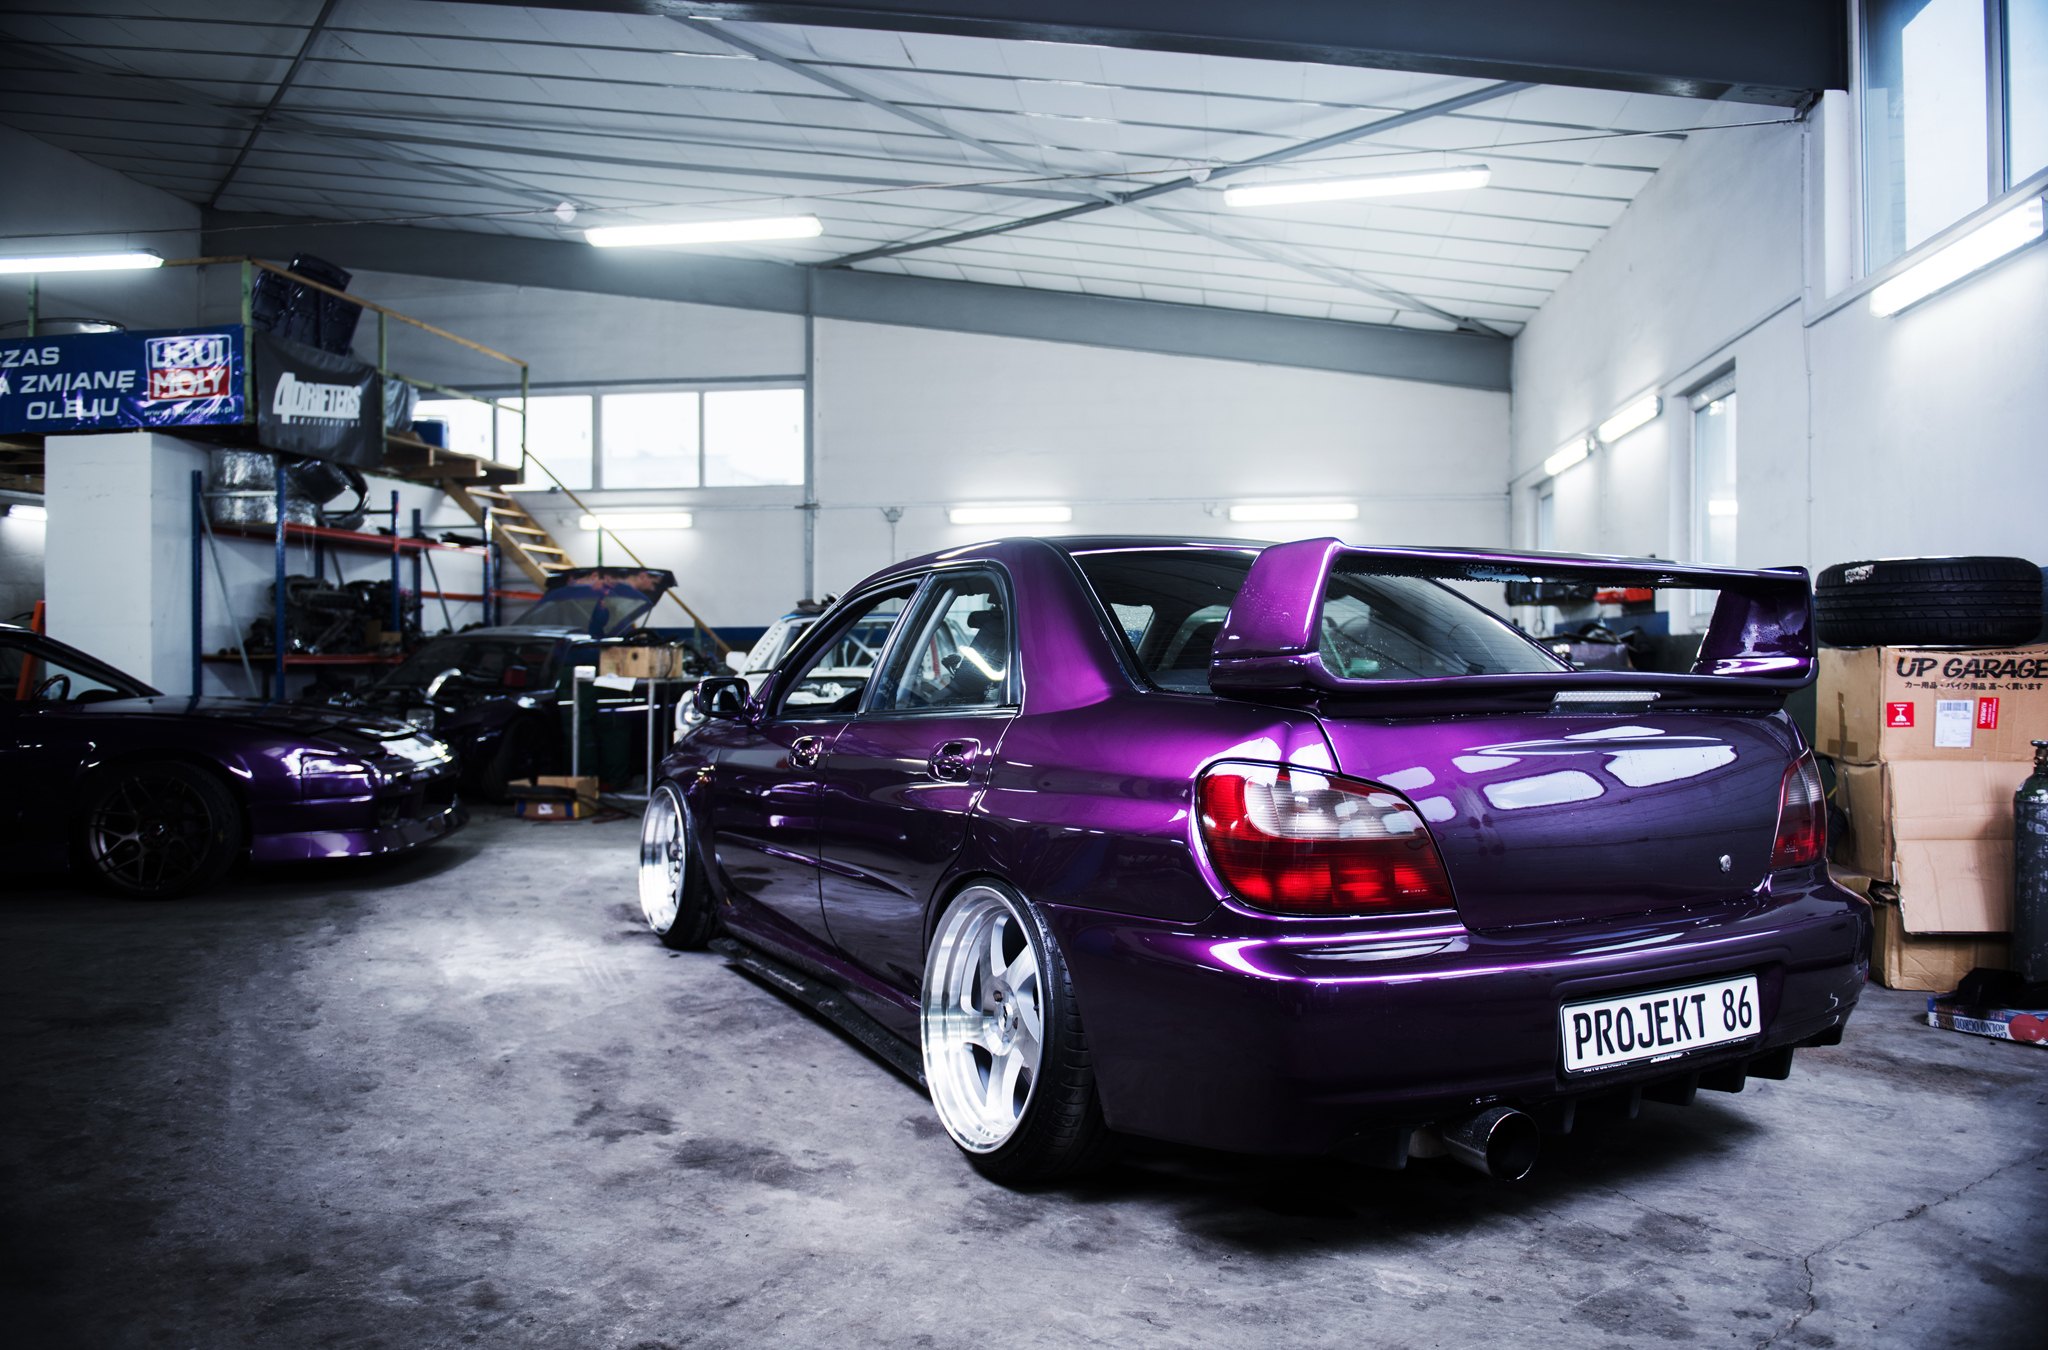 Custom Style Rear Spoiler on Purple Subaru WRX - Photo by JR Wheels